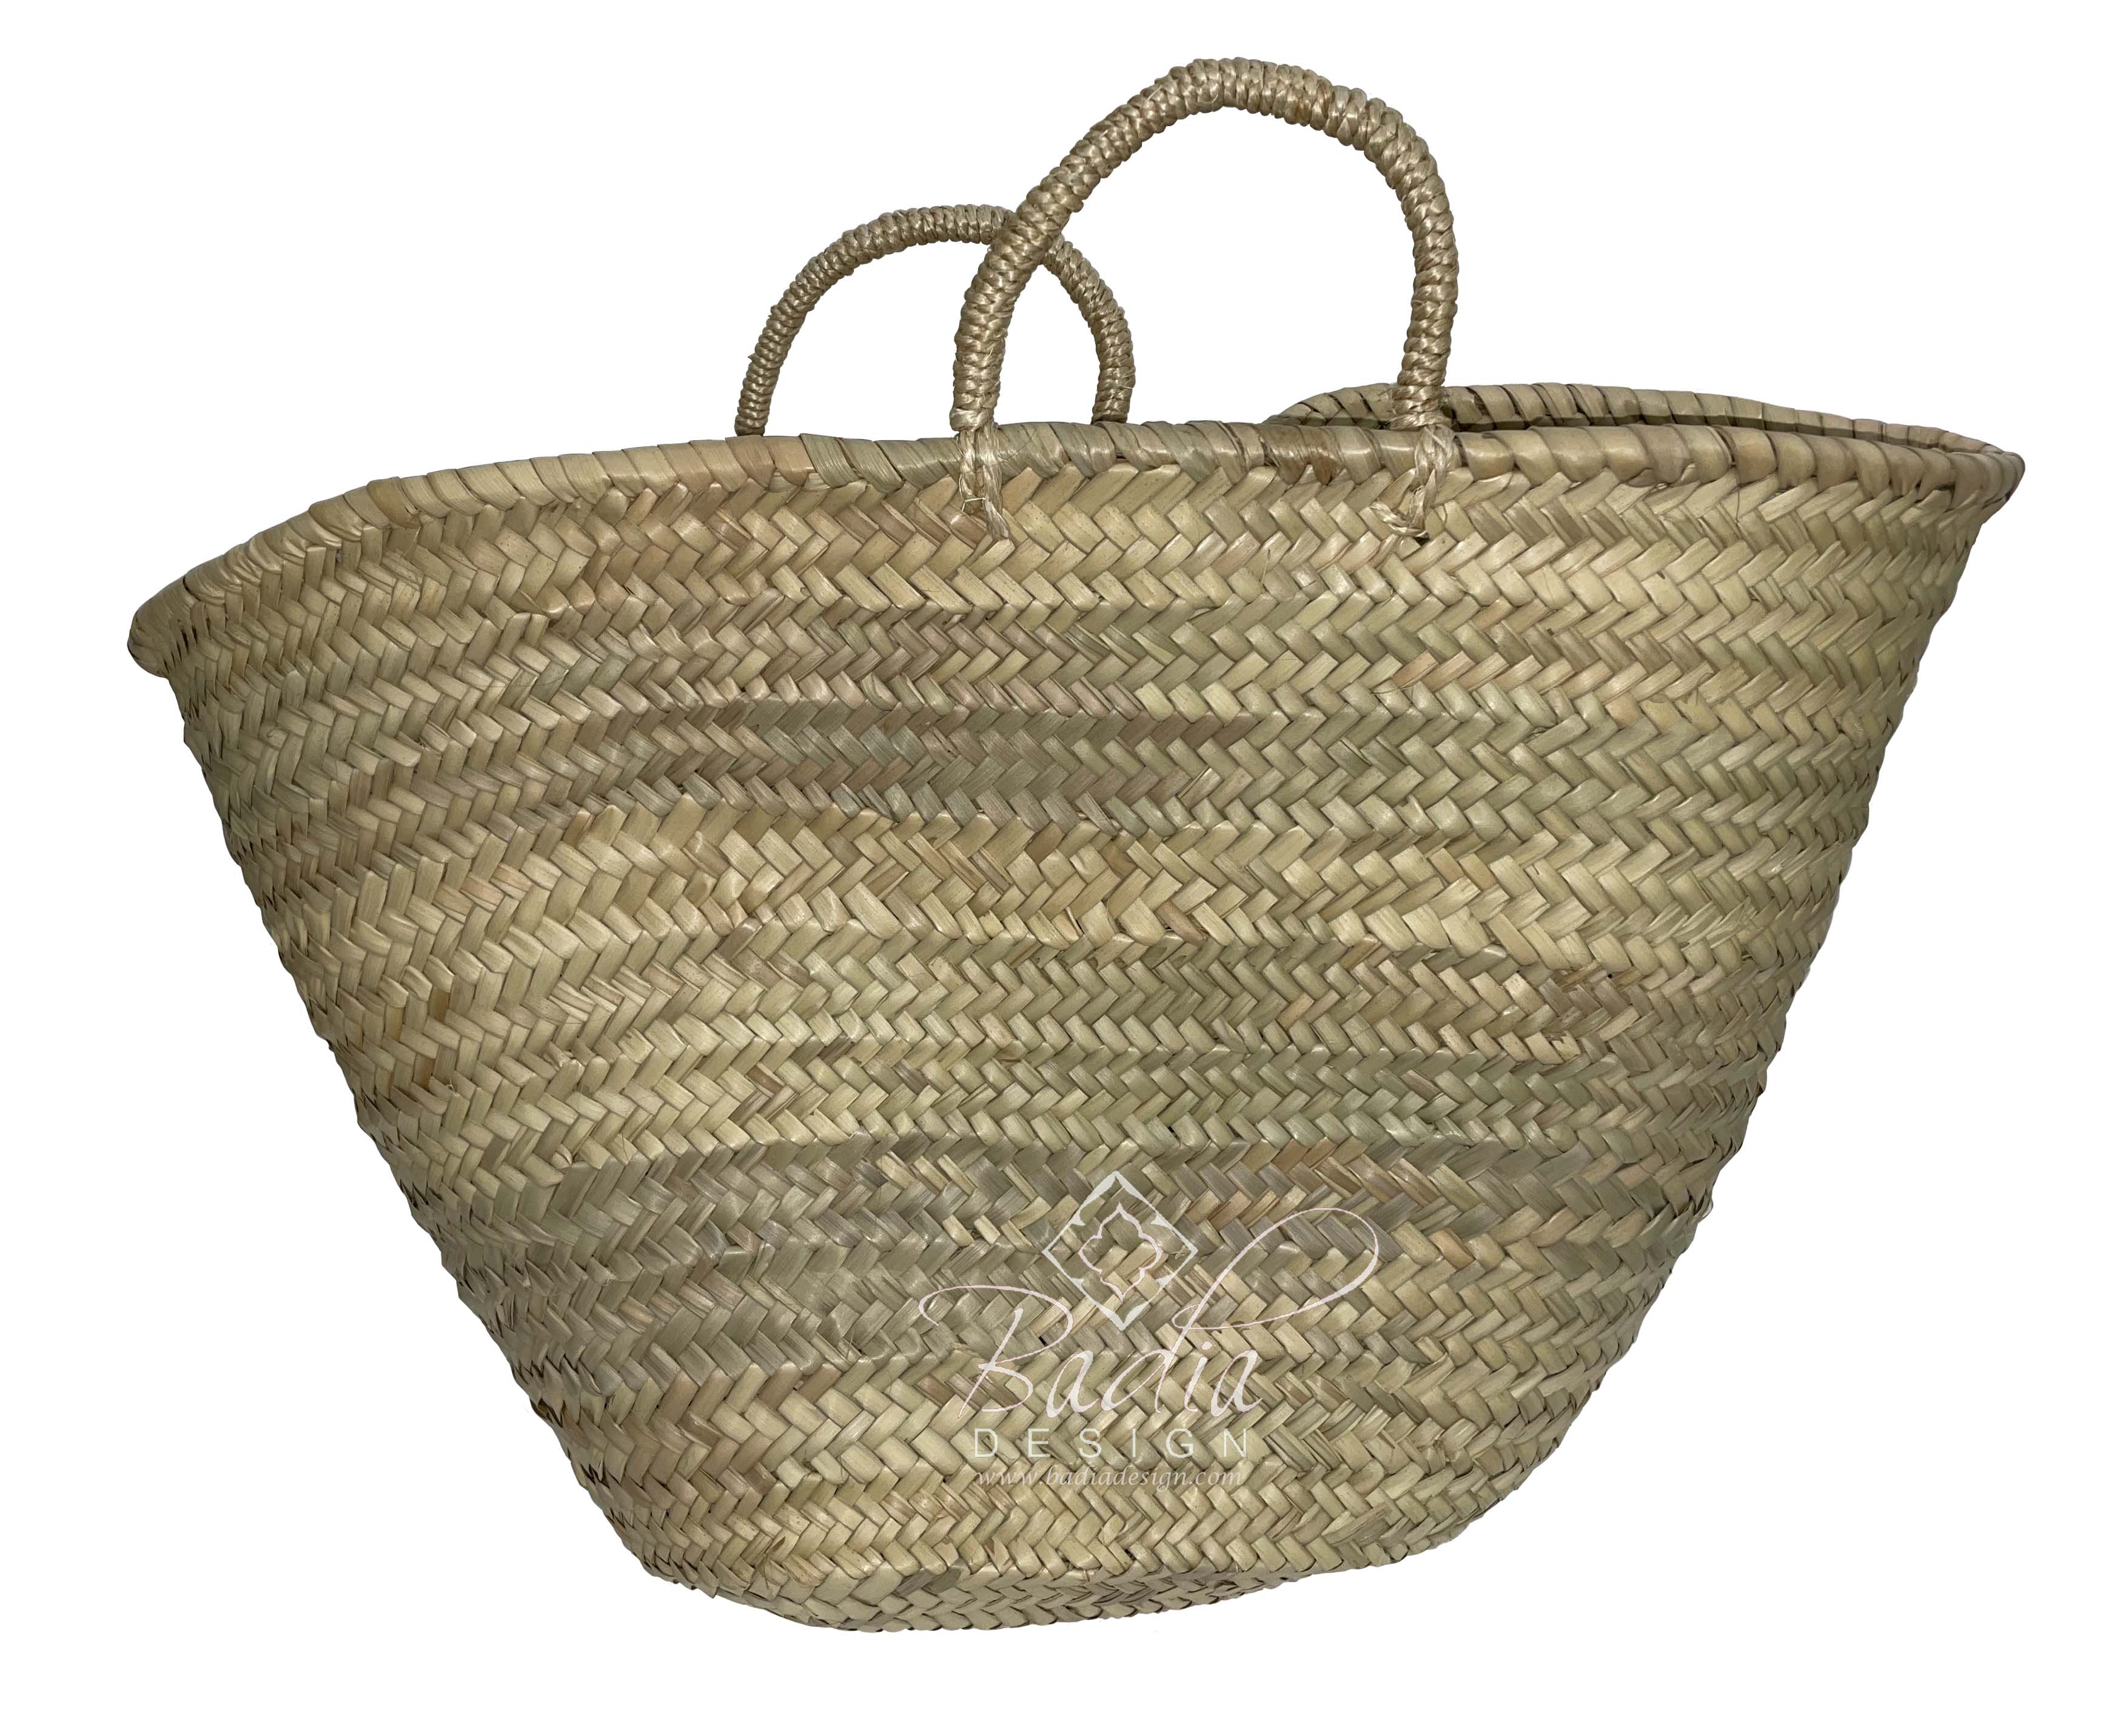 natural-color-handwoven-straw-basket-hb019-1.jpg